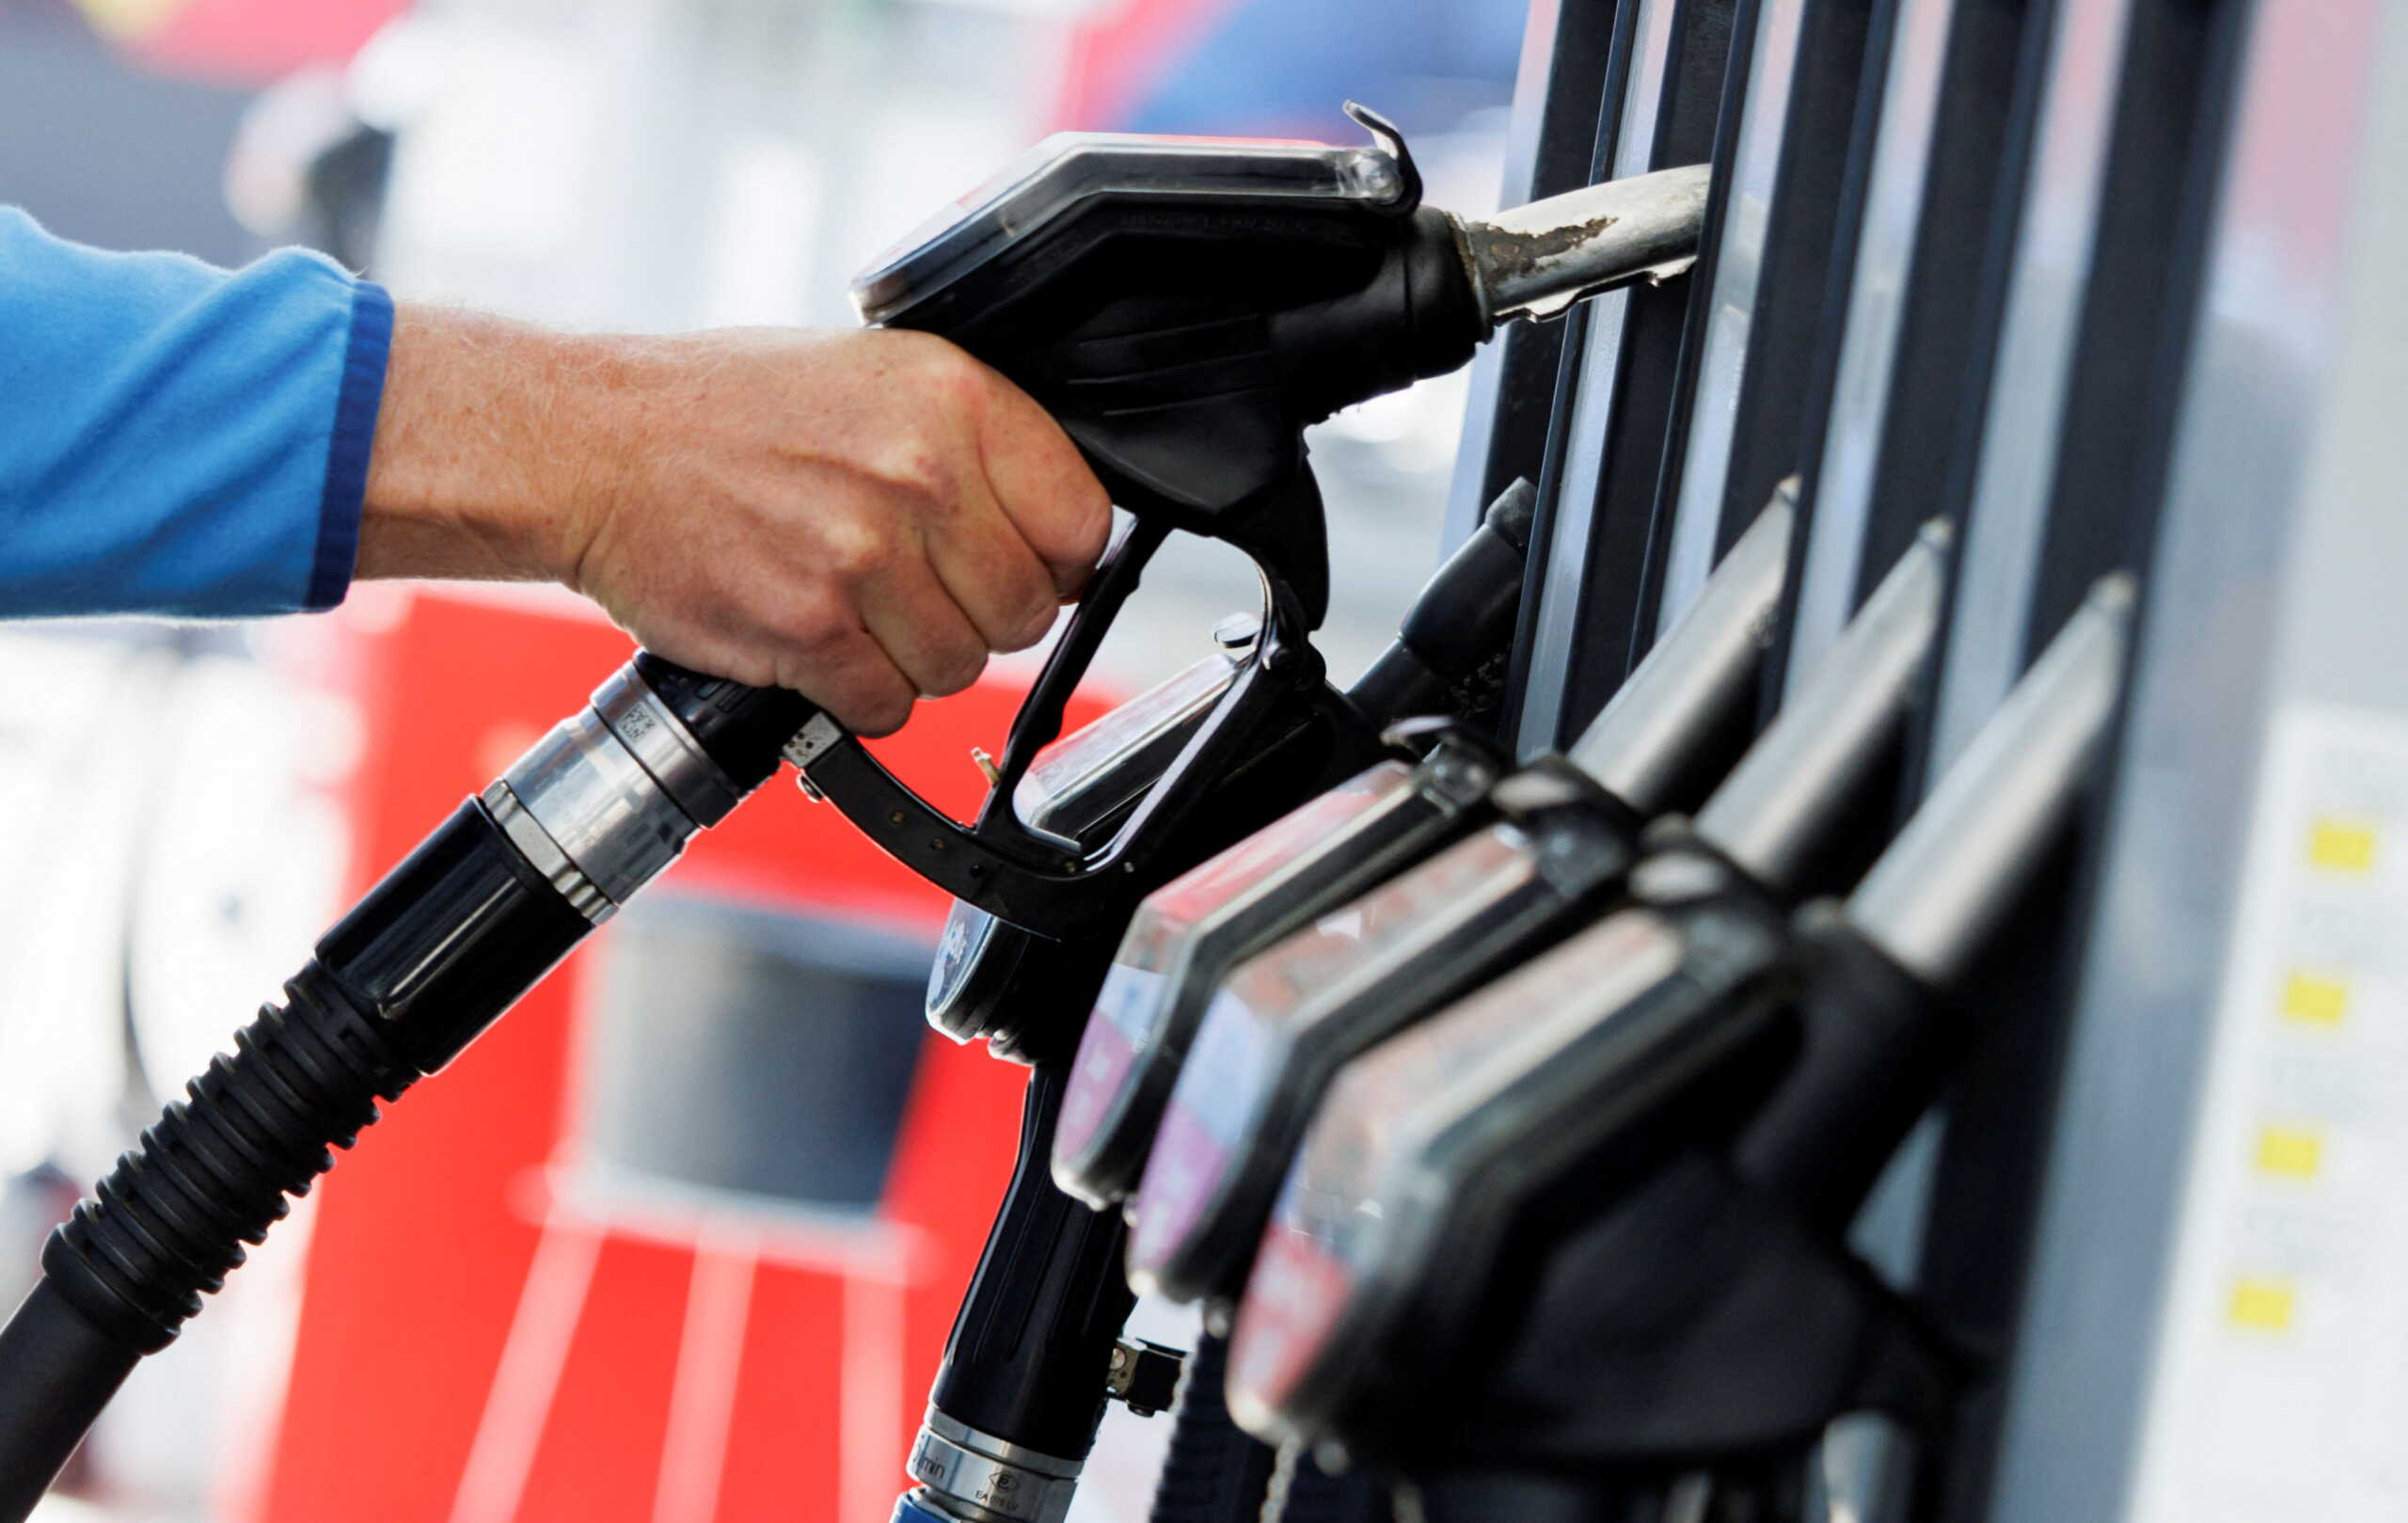 Καύσιμα: Χαραμάδα ελπίδας από τη μεγάλη «βουτιά» των τιμών σε αέριο και πετρέλαιο